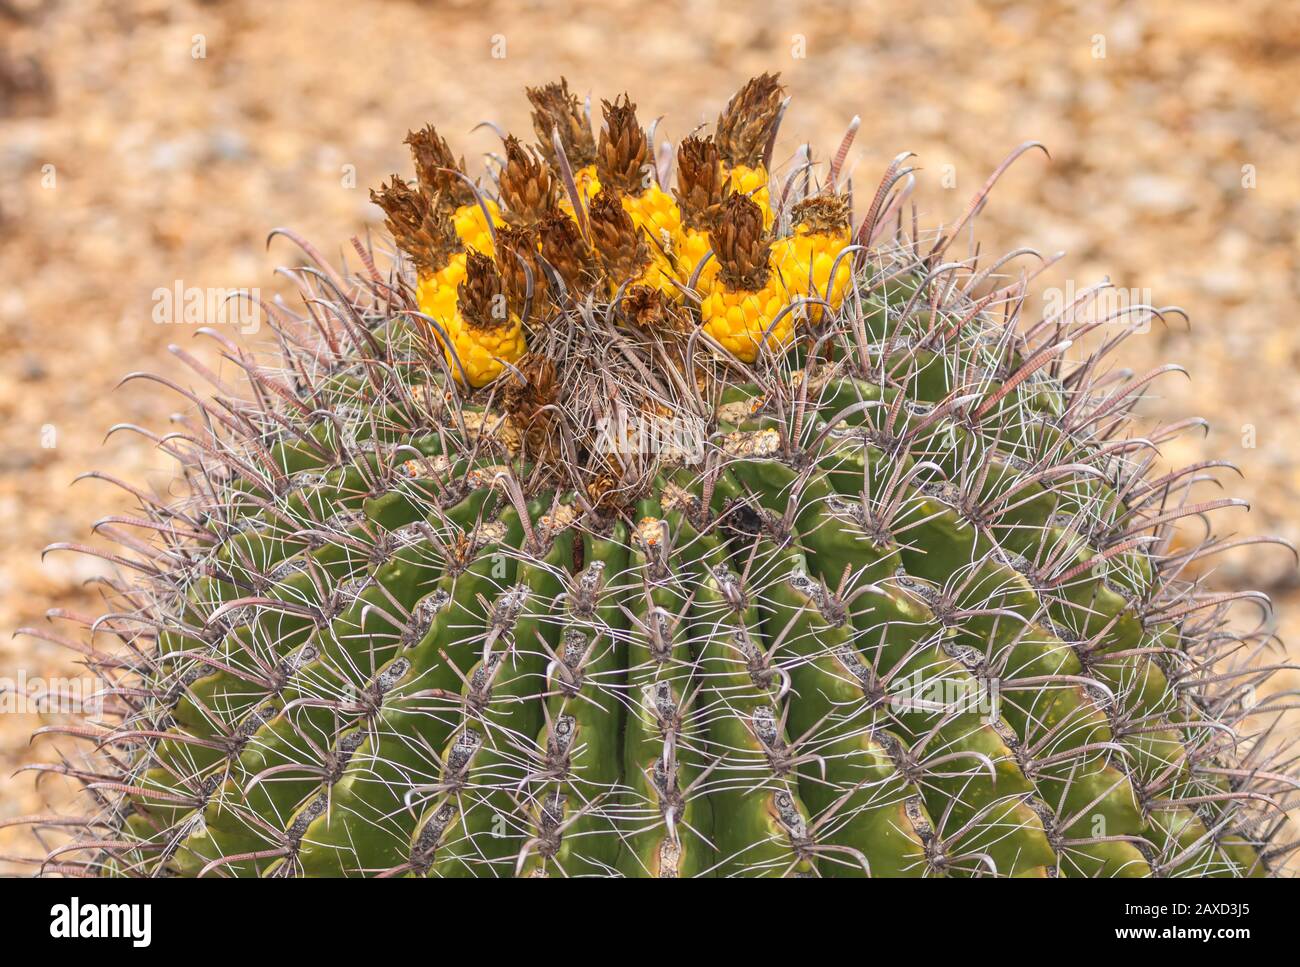 Gefährdete Pflanzenarten Fischhook Barrel Cactus Ferocactus wislizeni, mit Obst, im Winter Saguaro National Park, Arizona, Vereinigte Staaten. Stockfoto